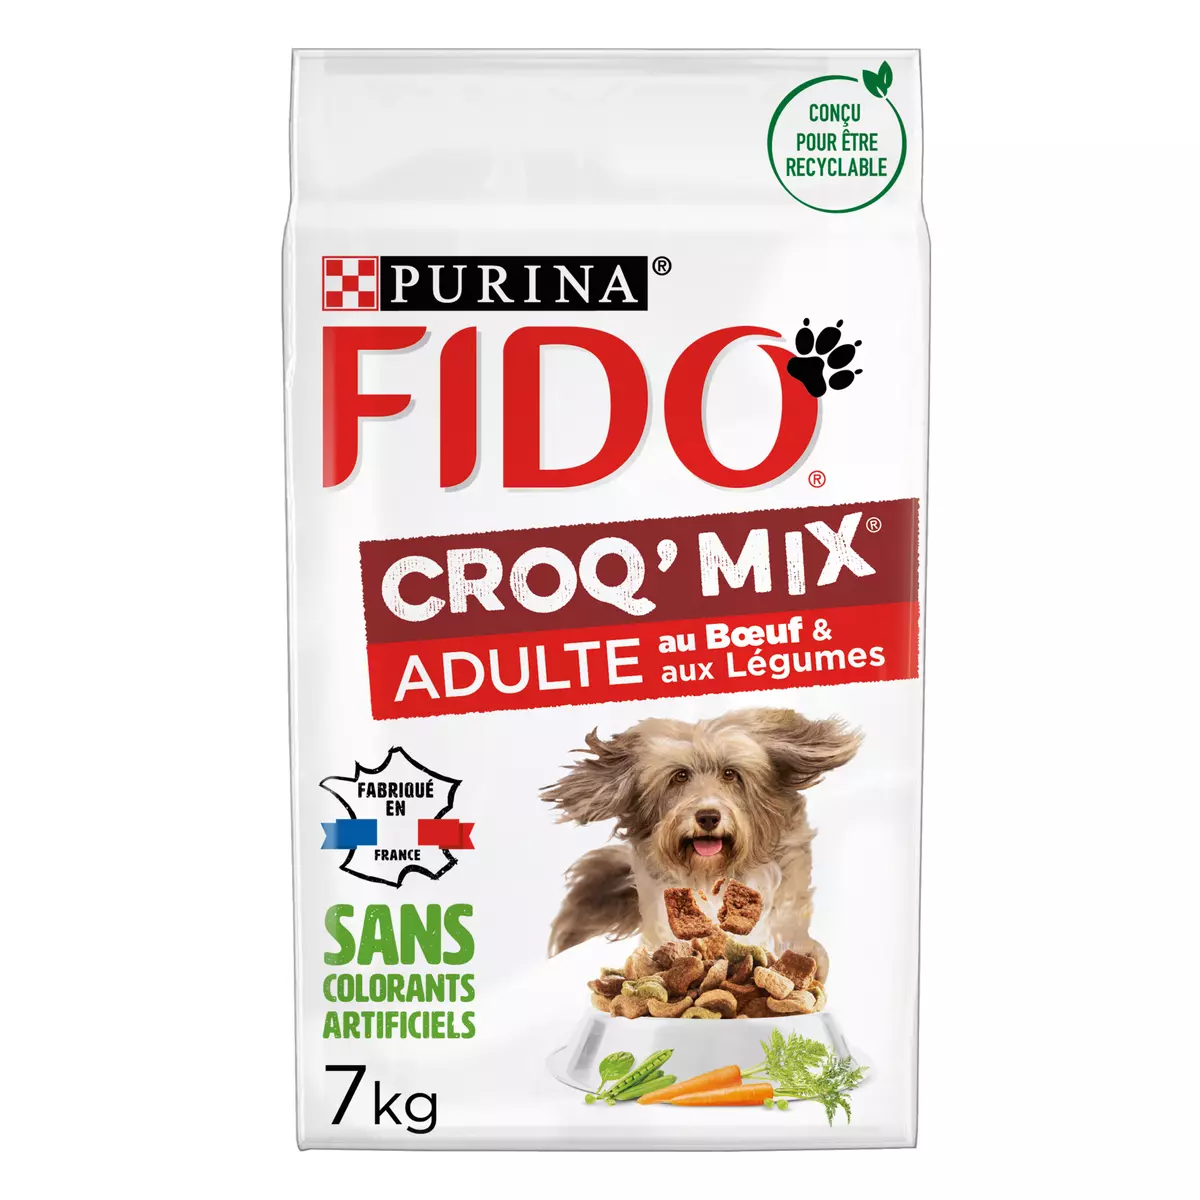 PURINA Fido croquettes au boeuf et légumes Croq'mix pour chien adulte 7 kg